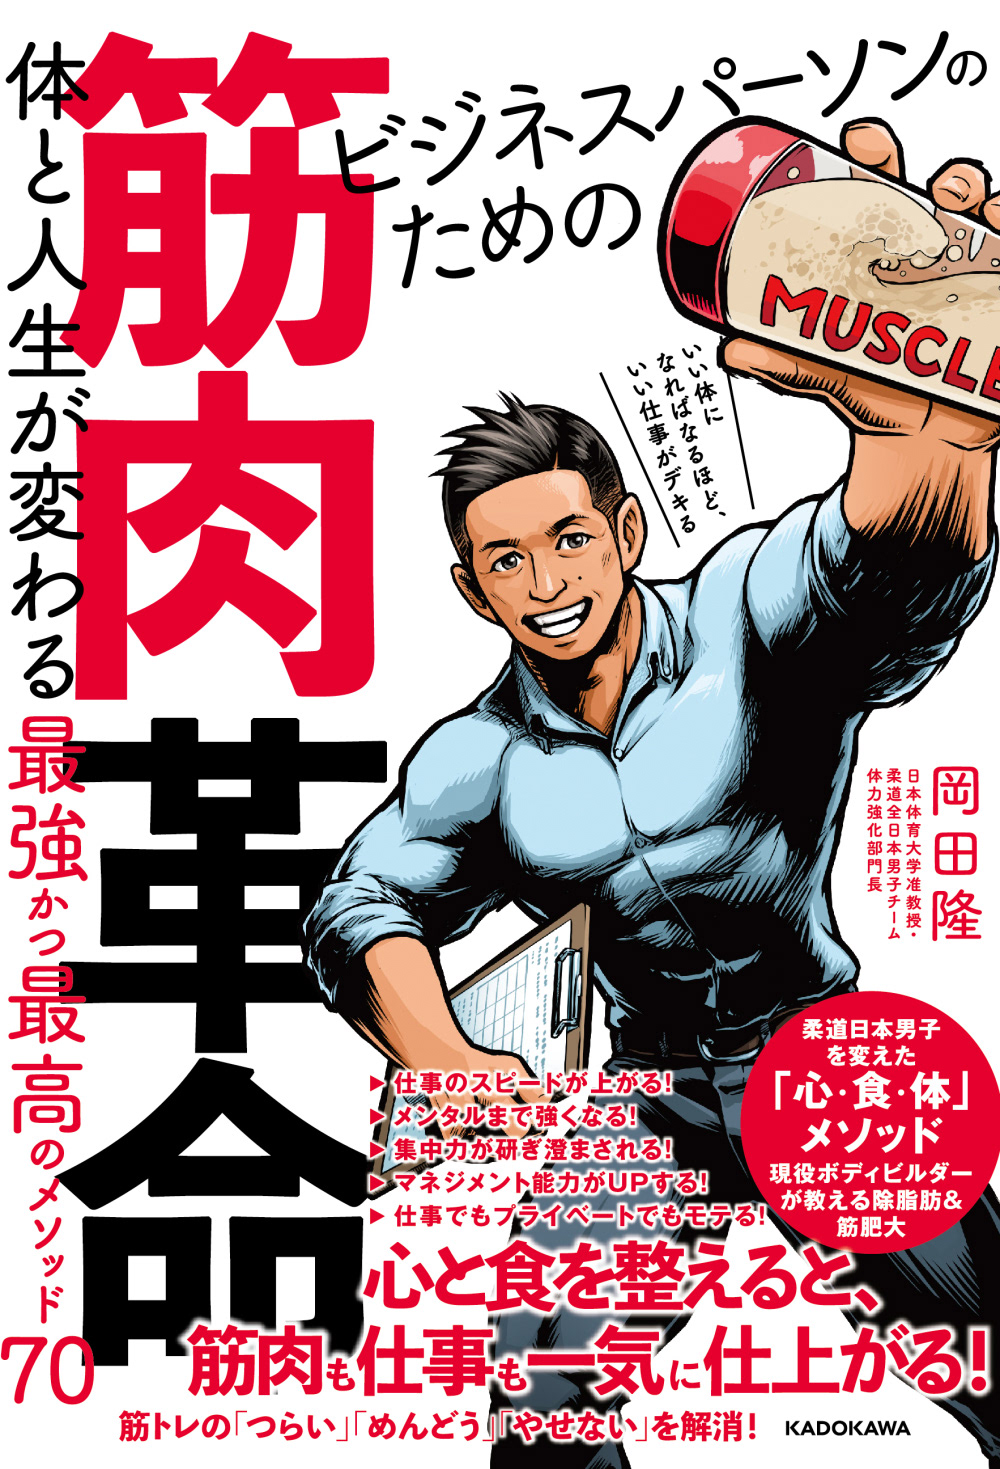 Hirado Sanpei アメコミ風イラストレーター平戸三平 イラスト仕事 ビジネスパーソンのための筋肉革命 書籍表紙イラスト